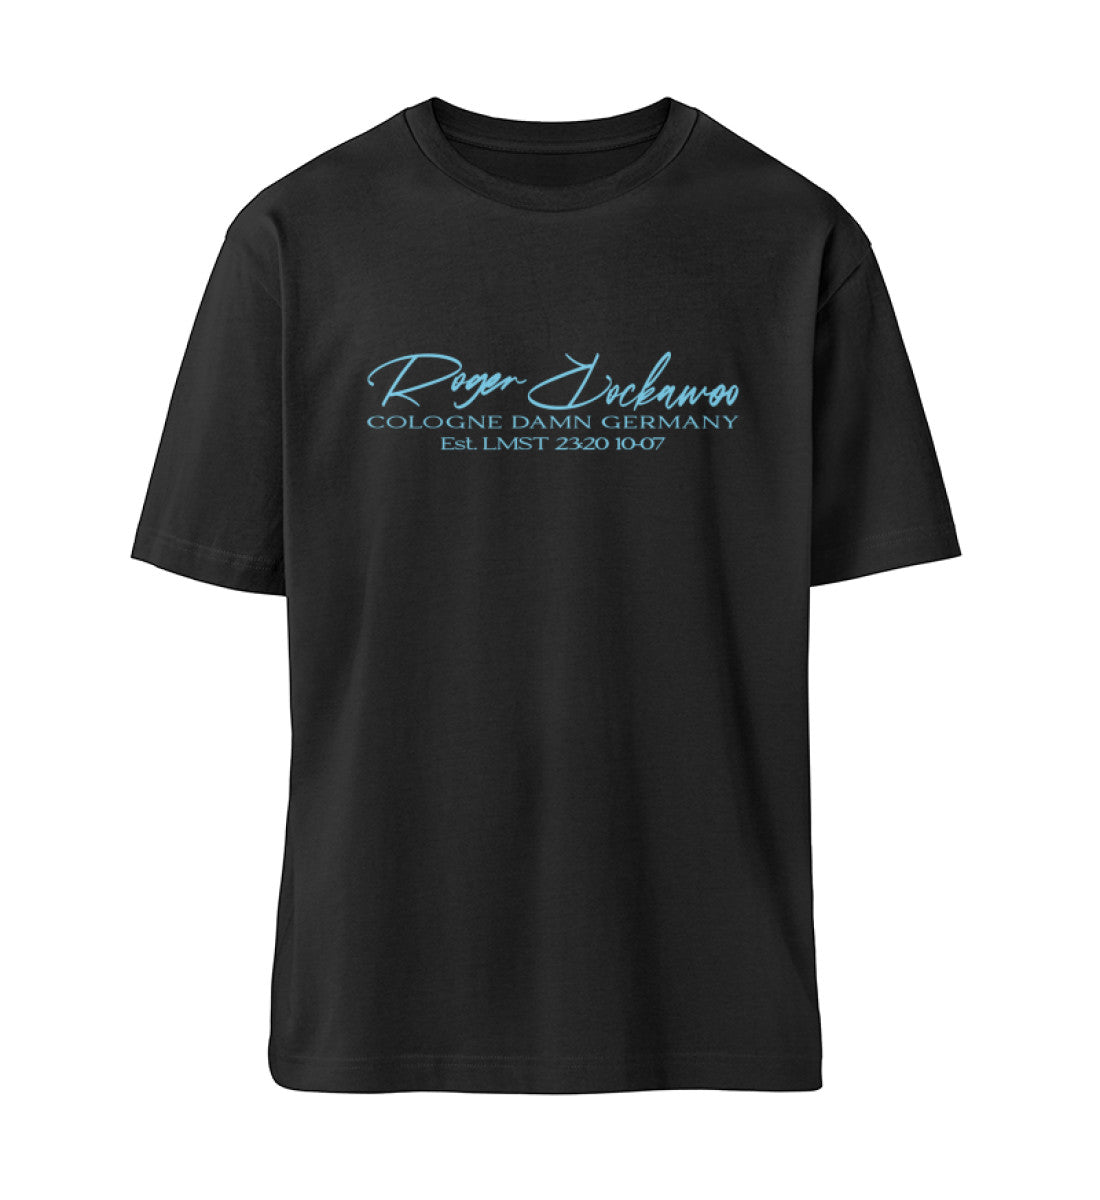 Schwarzes T-Shirt Unisex Relaxed Fit für Frauen und Männer bedruckt mit dem Design der Roger Rockawoo Kollektion surf shredding community